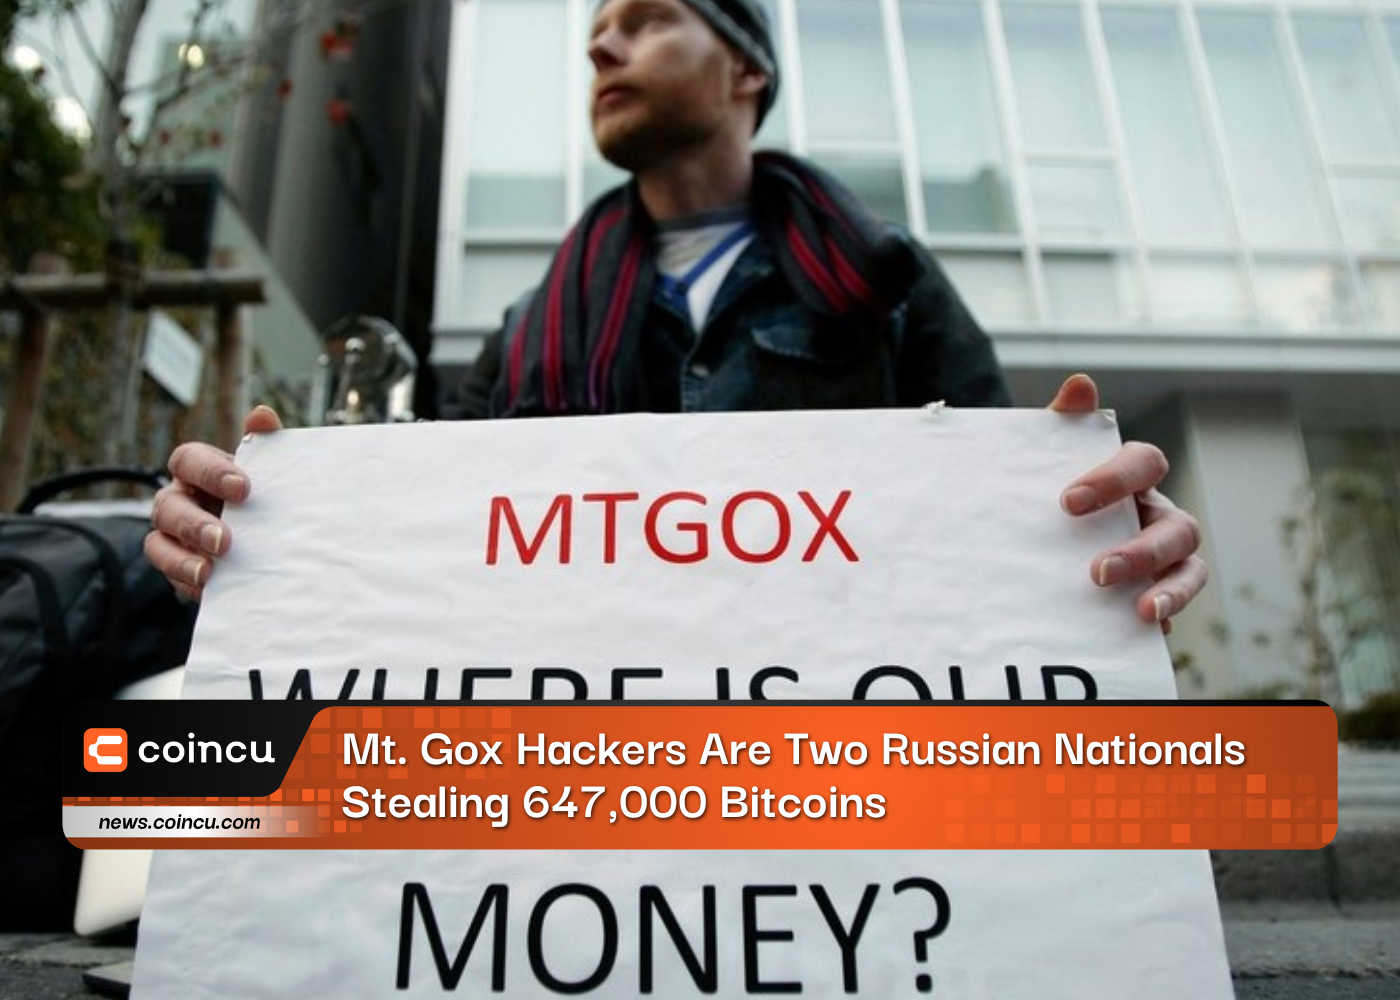 Mt. Gox Hackers sont deux ressortissants russes qui volent 647,000 XNUMX Bitcoins